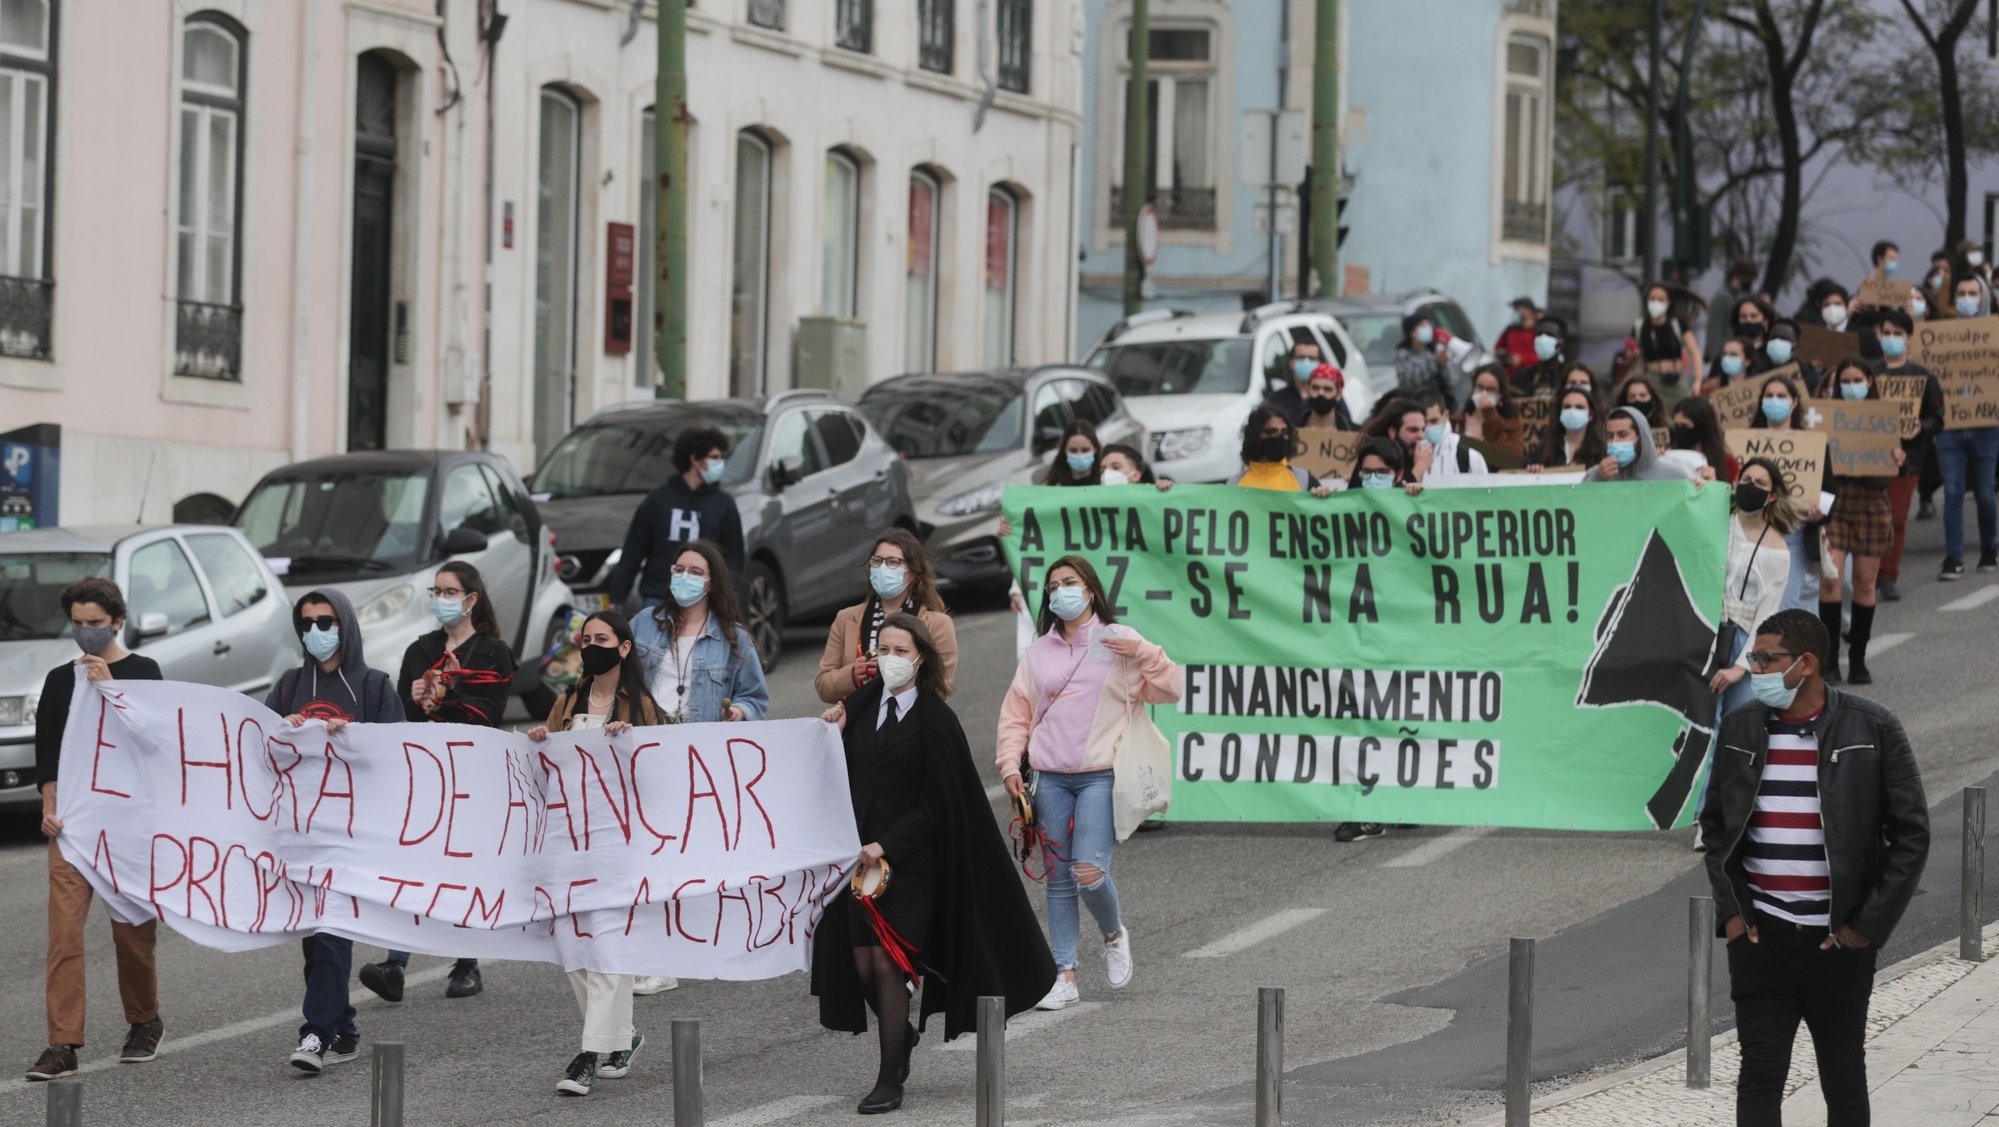 Manifestação de estudantes do ensino superior contra o pagamento de propinas sob o lema &quot;É hora de avançar! A propina tem de acabar!&quot;, em Lisboa, 28 de abril de 2021. TIAGO PETINGA/LUSA